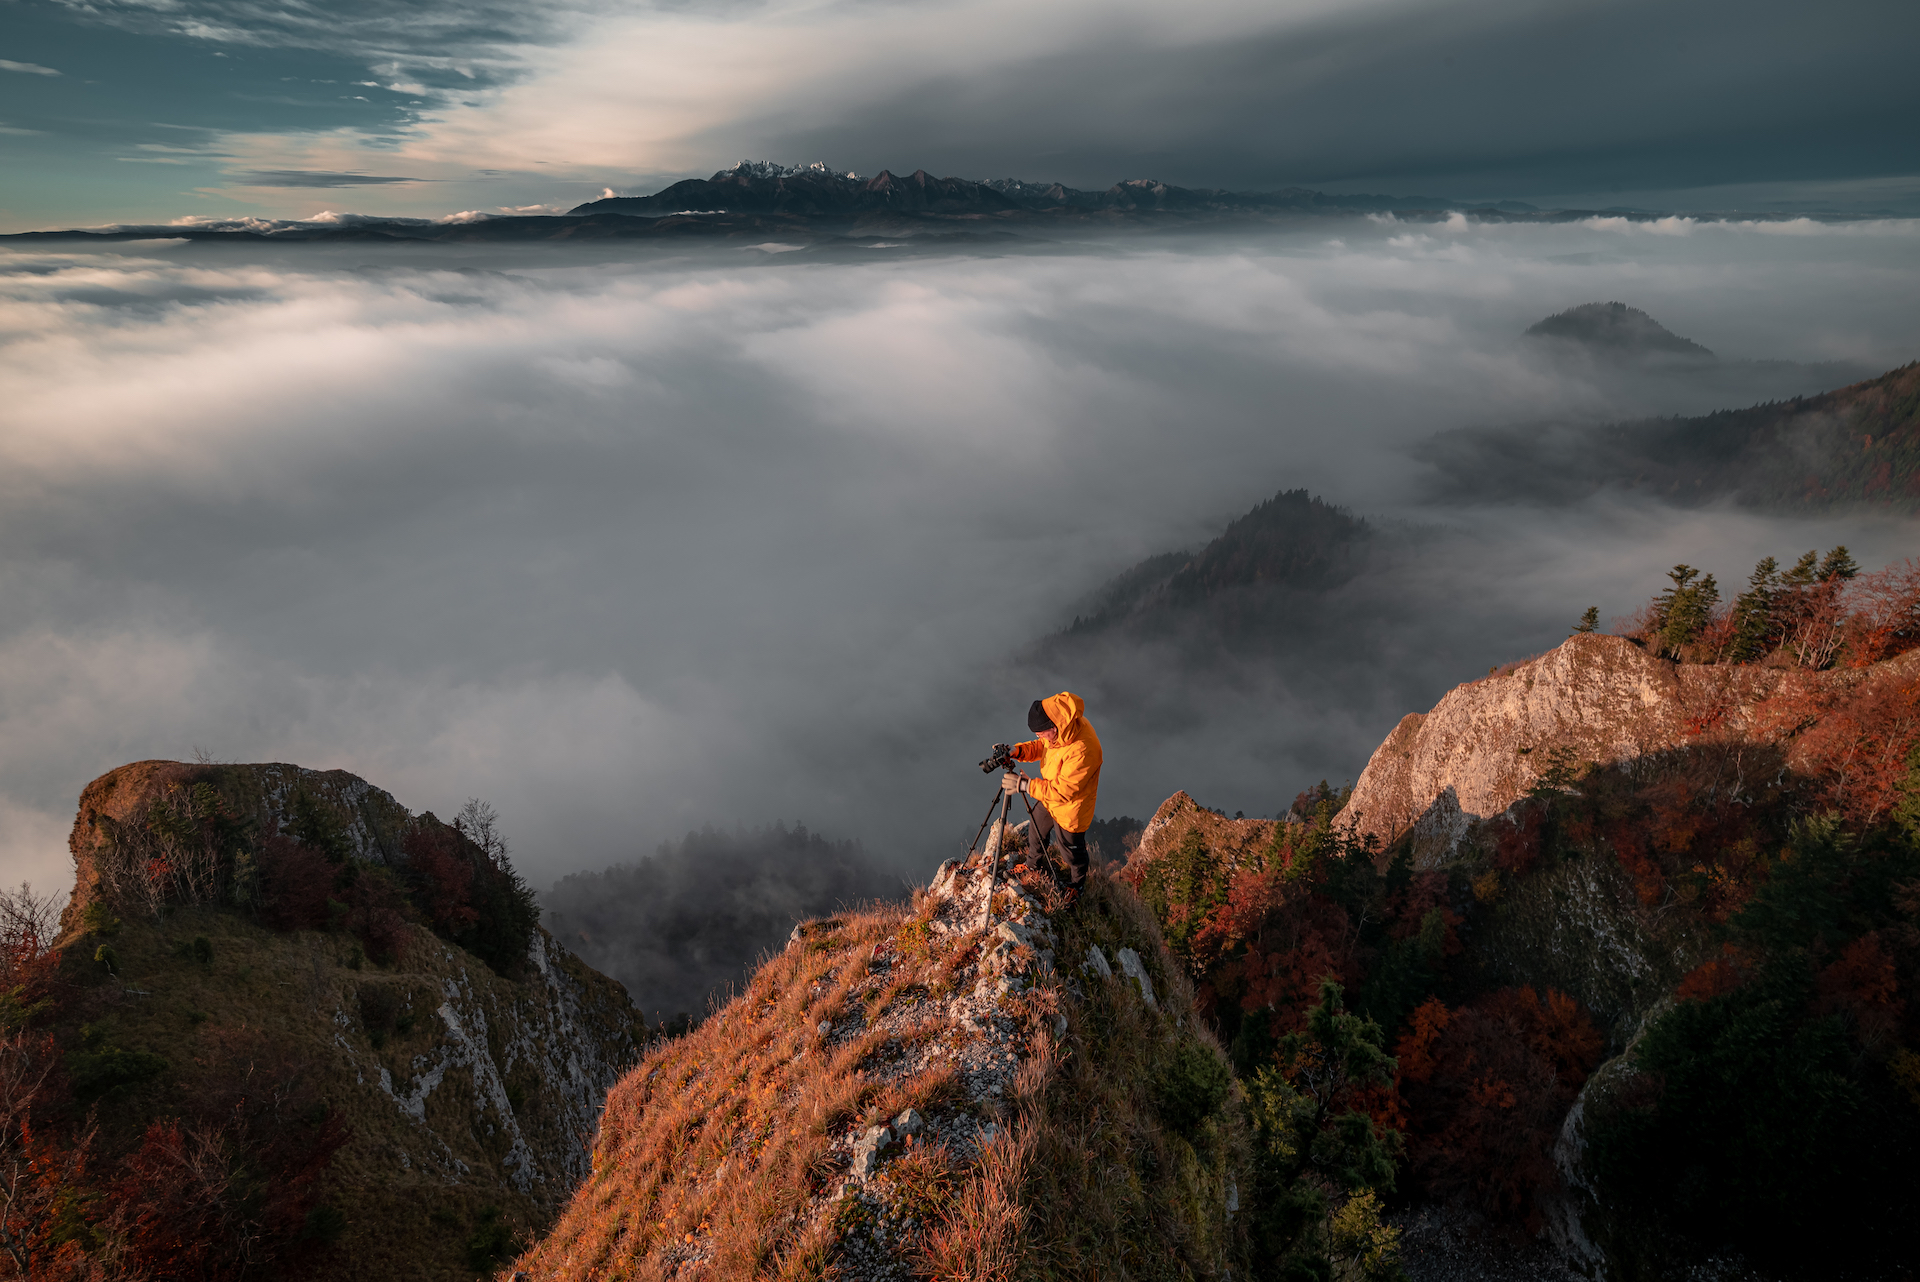 Fotograf w żółtej kurtce robi zdjęcie na szczycie góry a obok unosi się mgła